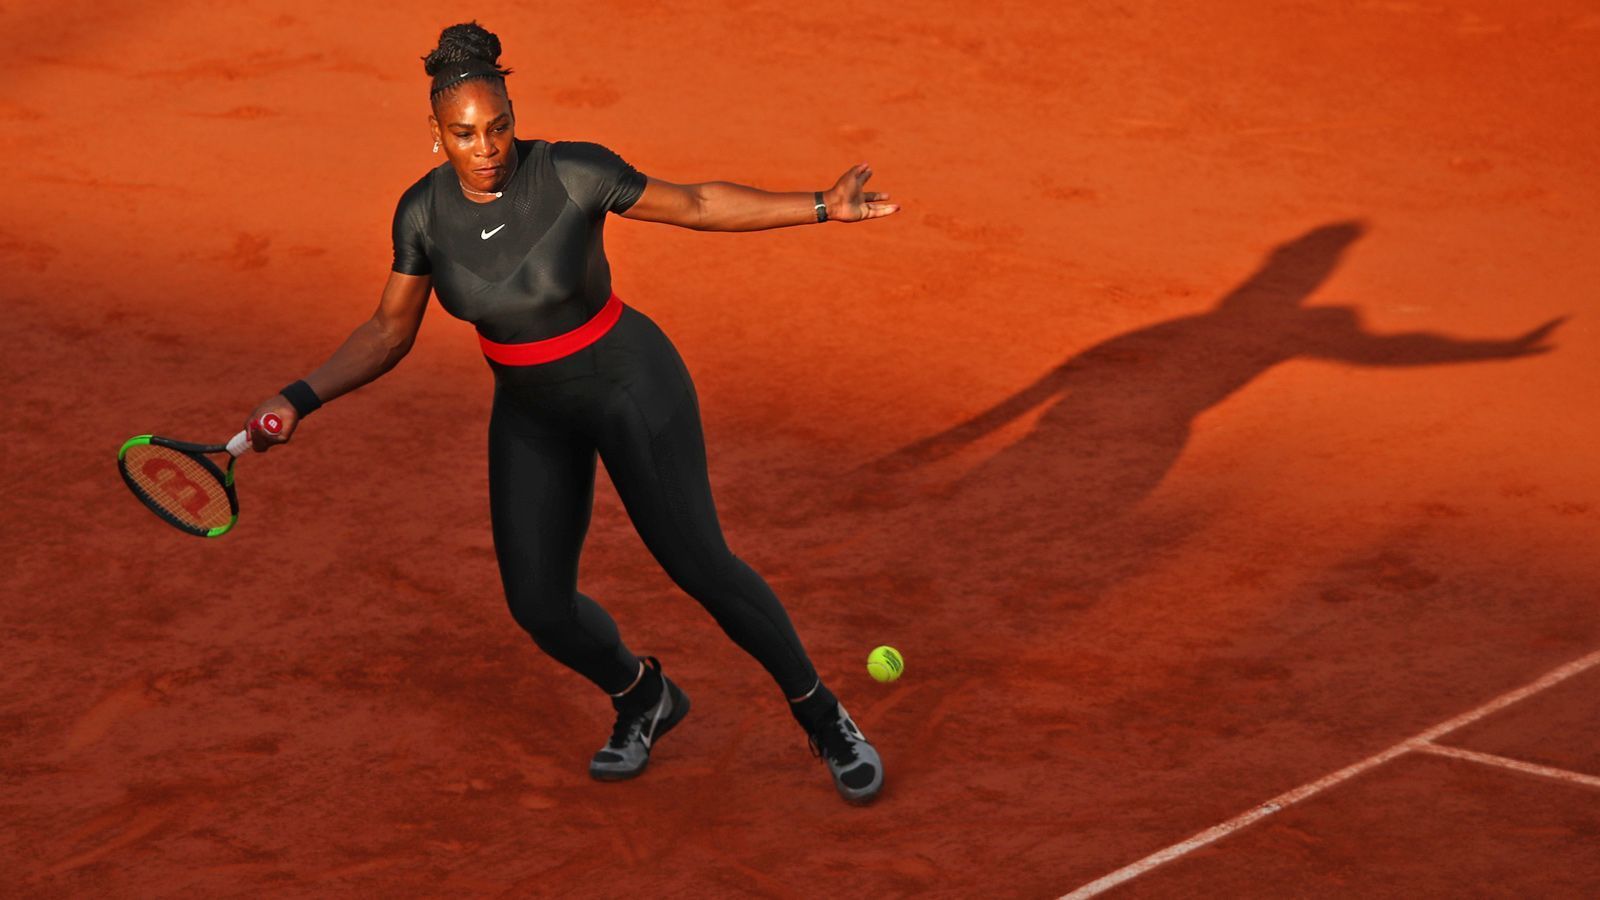 
                <strong>Serena Williams - French Open 2018</strong><br>
                Es war ein aufsehenerregendes Comeback! Bei den French Open 2018 spielte Williams erstmals nach der Geburt ihrer Tochter 2017 wieder ein Grand Slam - aber nicht ohne sich dafür ein einzigartiges Tennis-Outfit ausgesucht zu haben. "Wir designen immer lange vorher", sagte sie damals. Der schwarze, hautenge Ganzkörperanzug mit rotem Taillengürtel war nicht aus einer spontanen Laune heraus entstanden. Es sollte eine starke, kraftvolle Botschaft an Mütter sein, die nach ihrer Schwangerschaft wieder fit werden wollen.
              